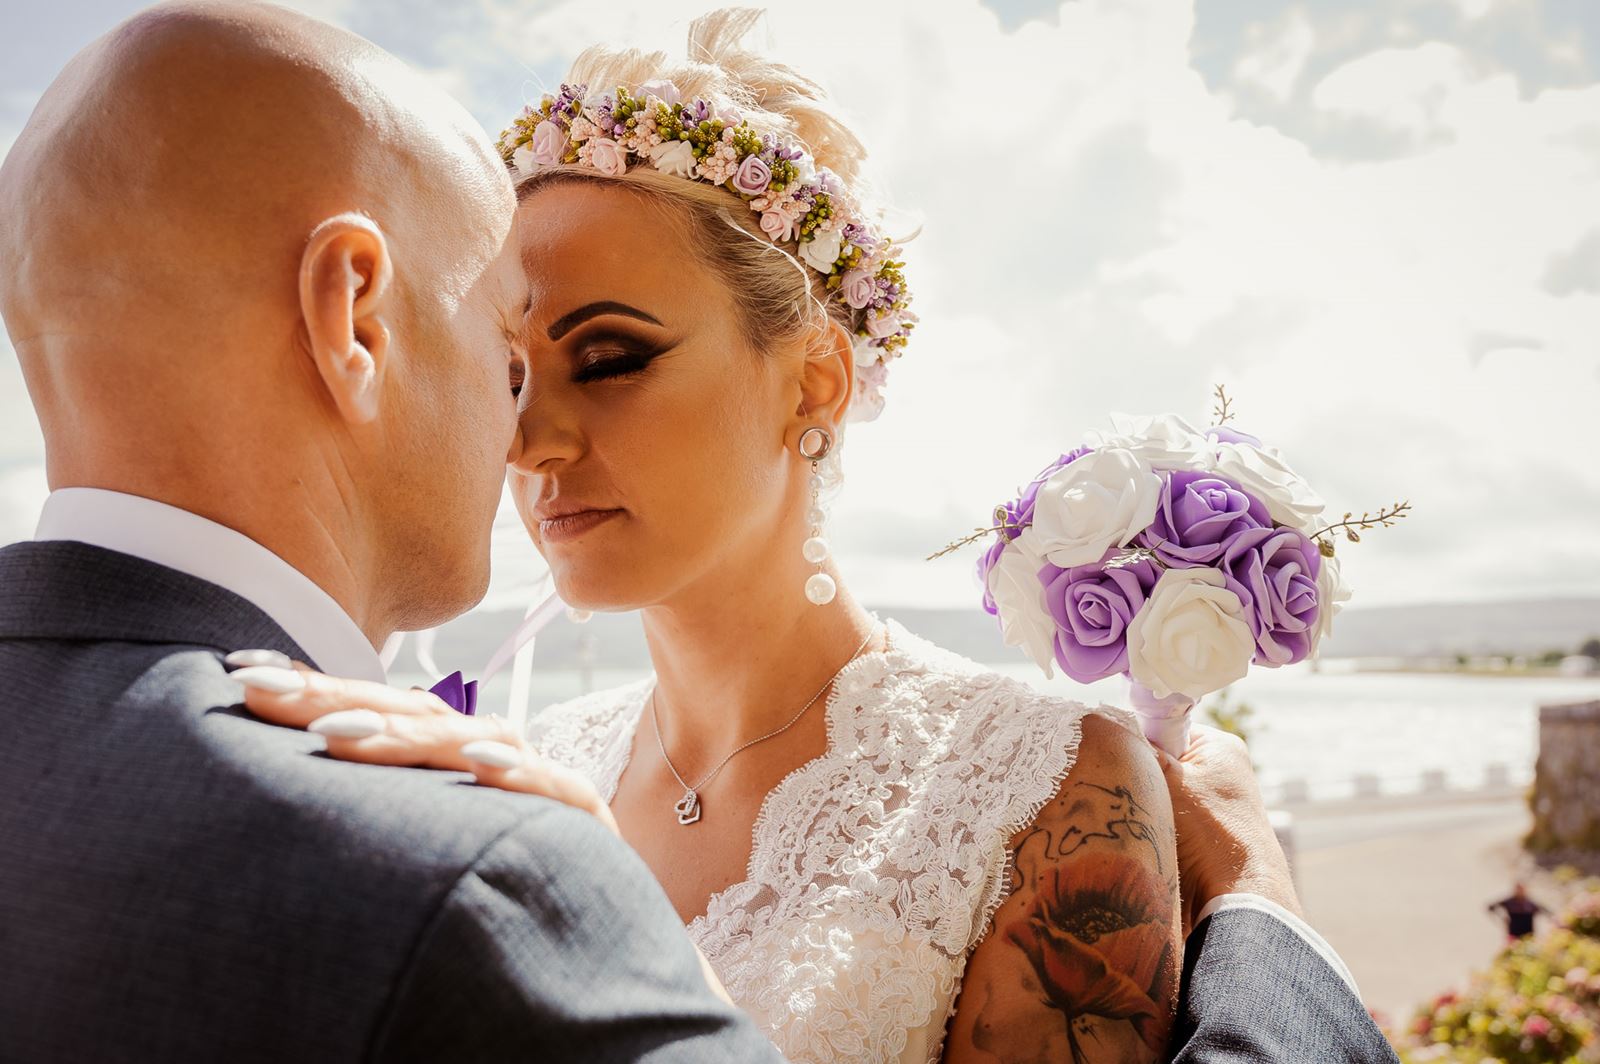 polish bride with headpiece